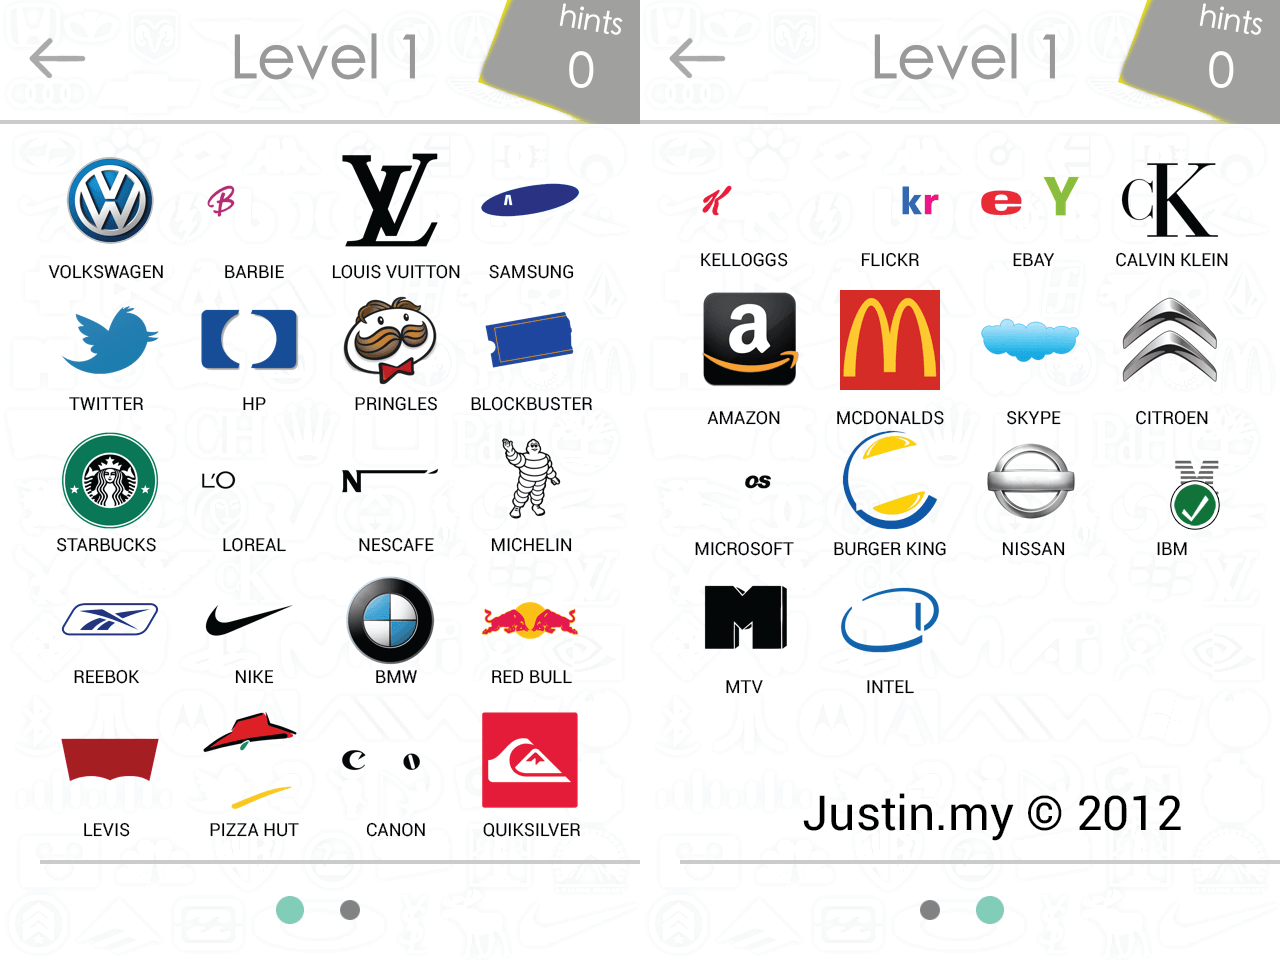 Level 2 Logo Quiz Answers - Bubble - DroidGaGu